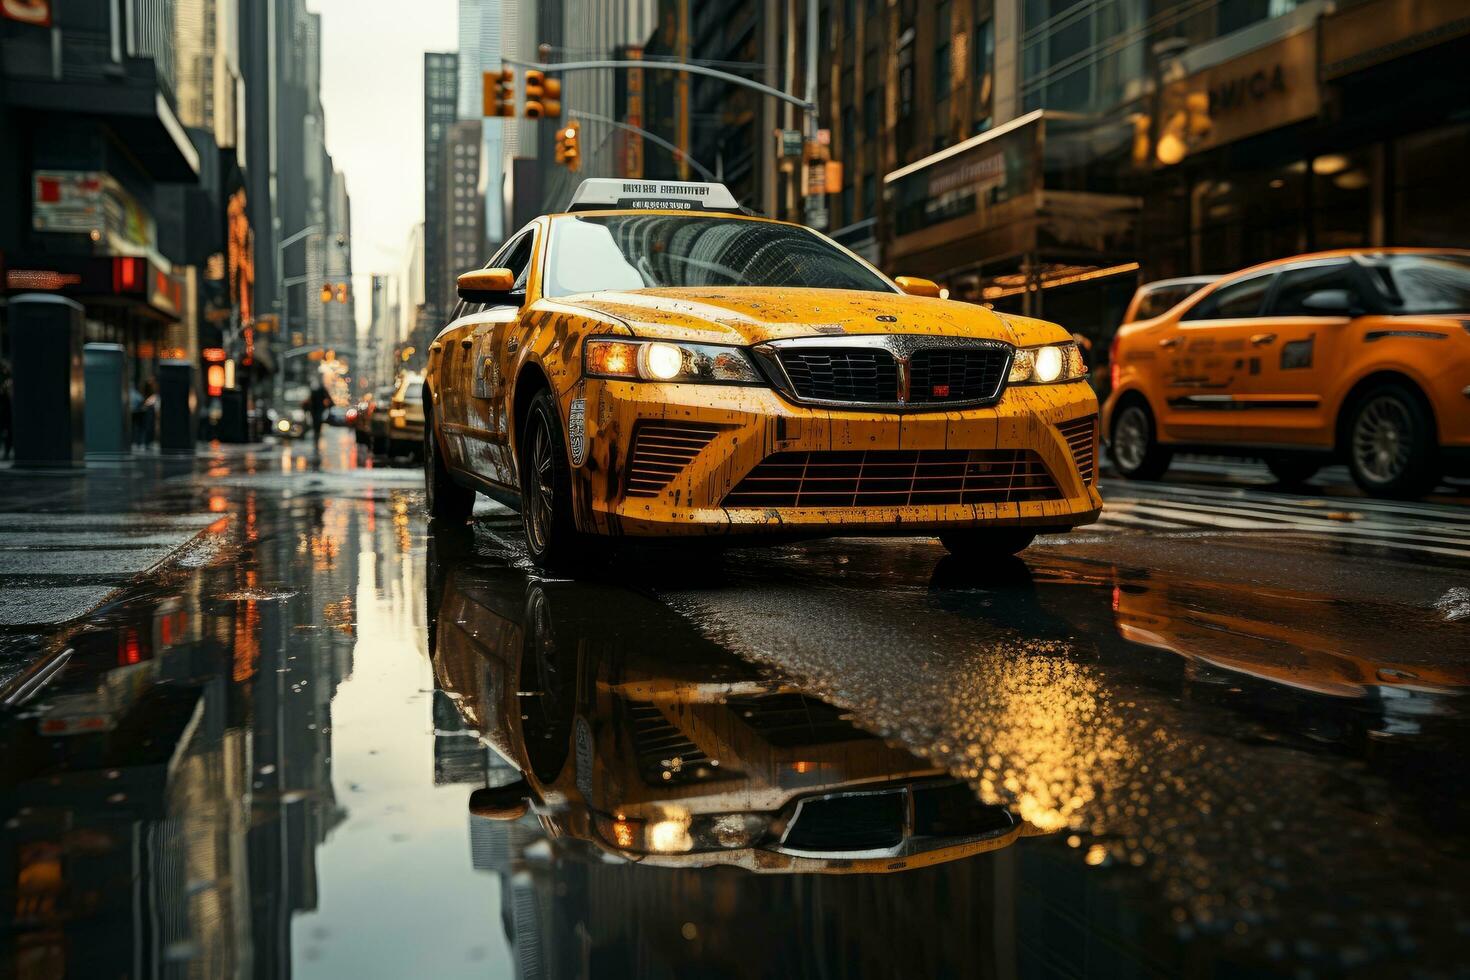 La cabina amarilla atraviesa Times Square en Nueva York, NY, EE. UU. foto